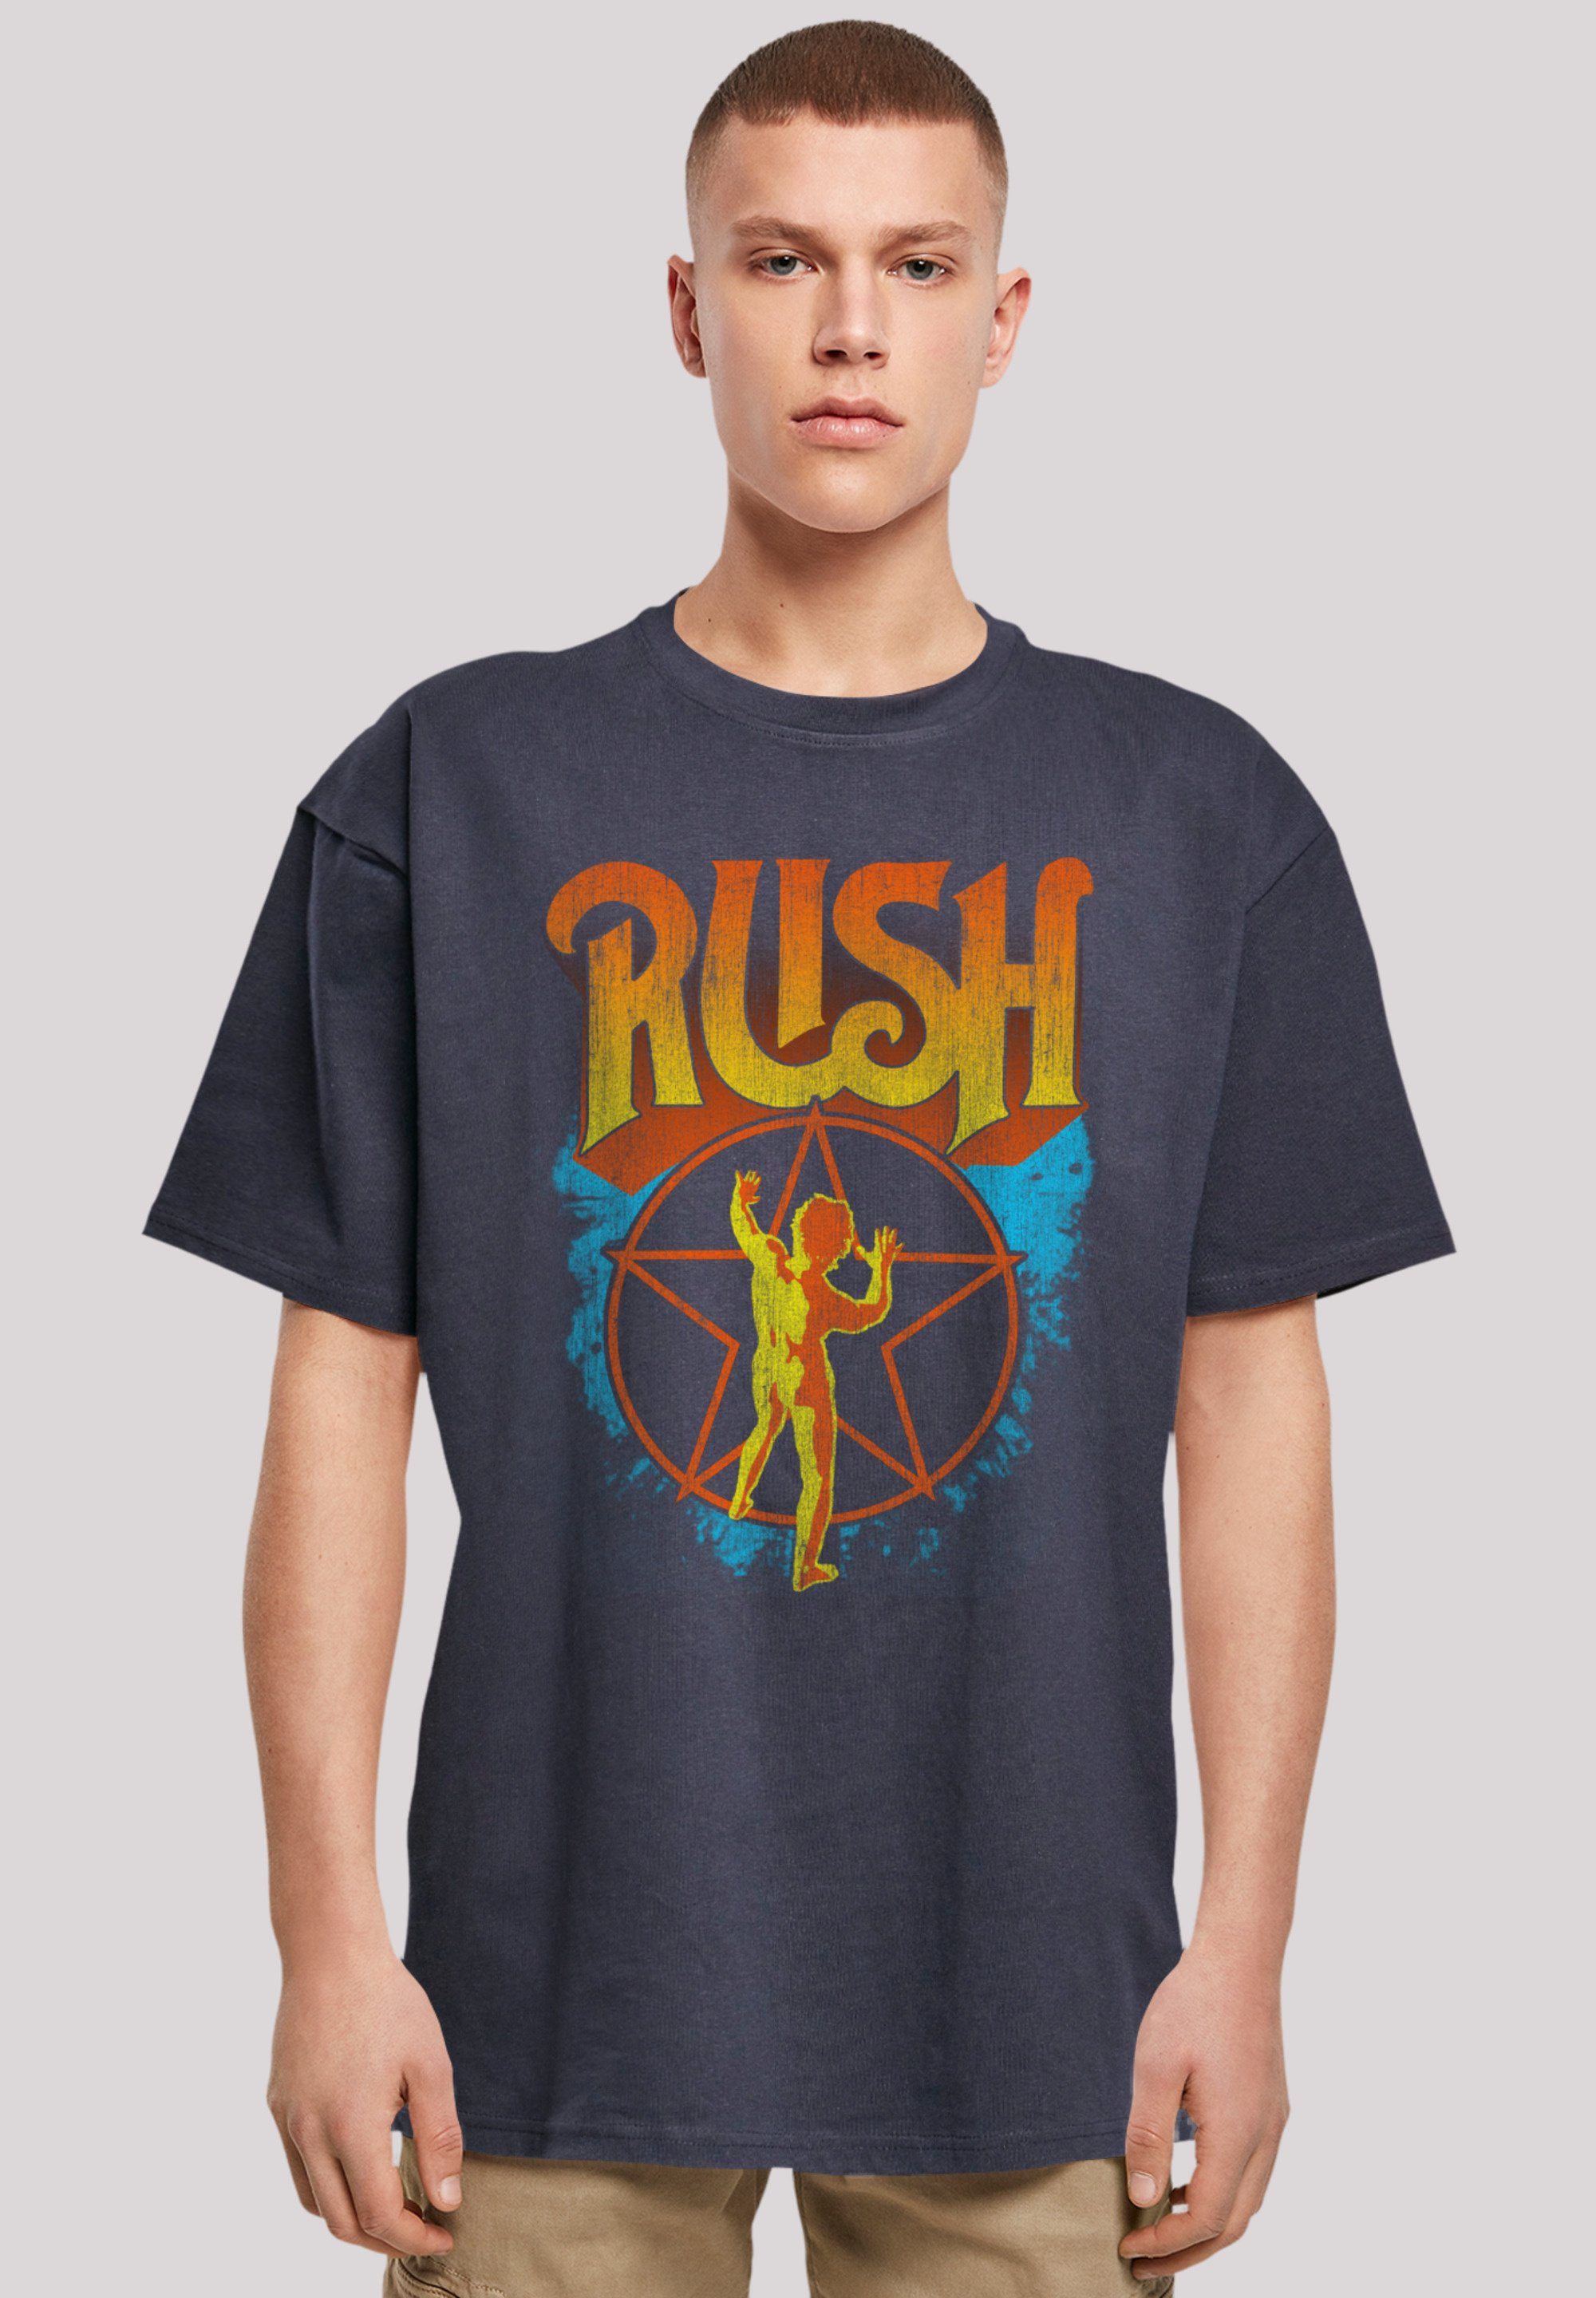 F4NT4STIC T-Shirt Rush Rock Band Starman Premium Qualität navy